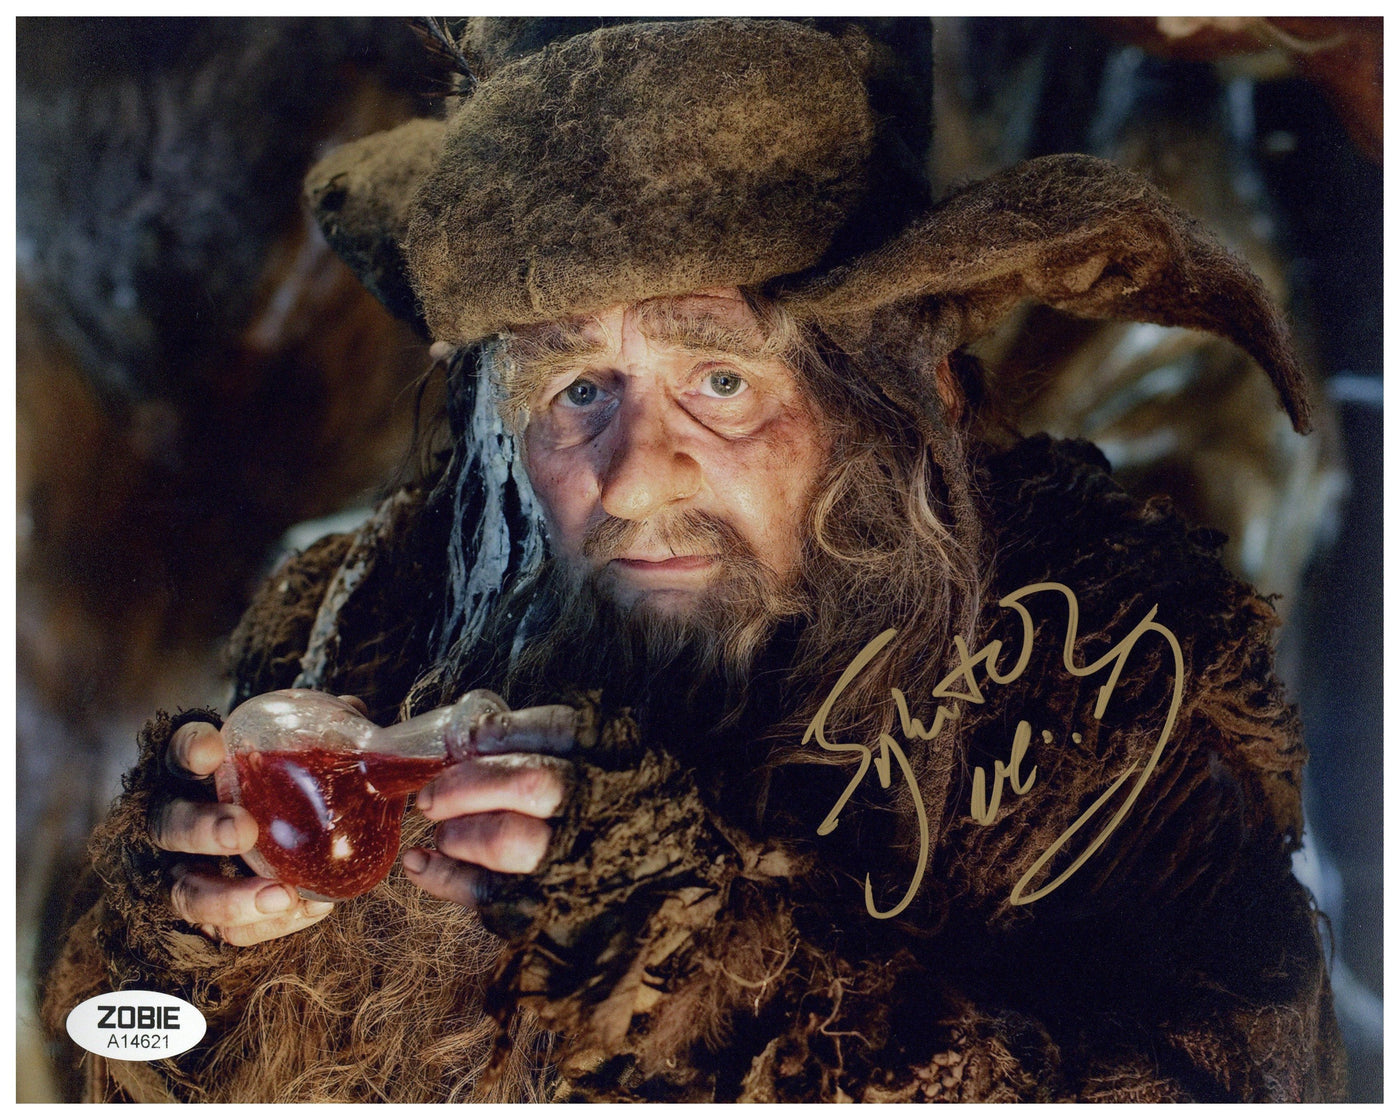 Sylvester McCoy Signed 8x10 Photo The Hobbit Autographed Zobie COA